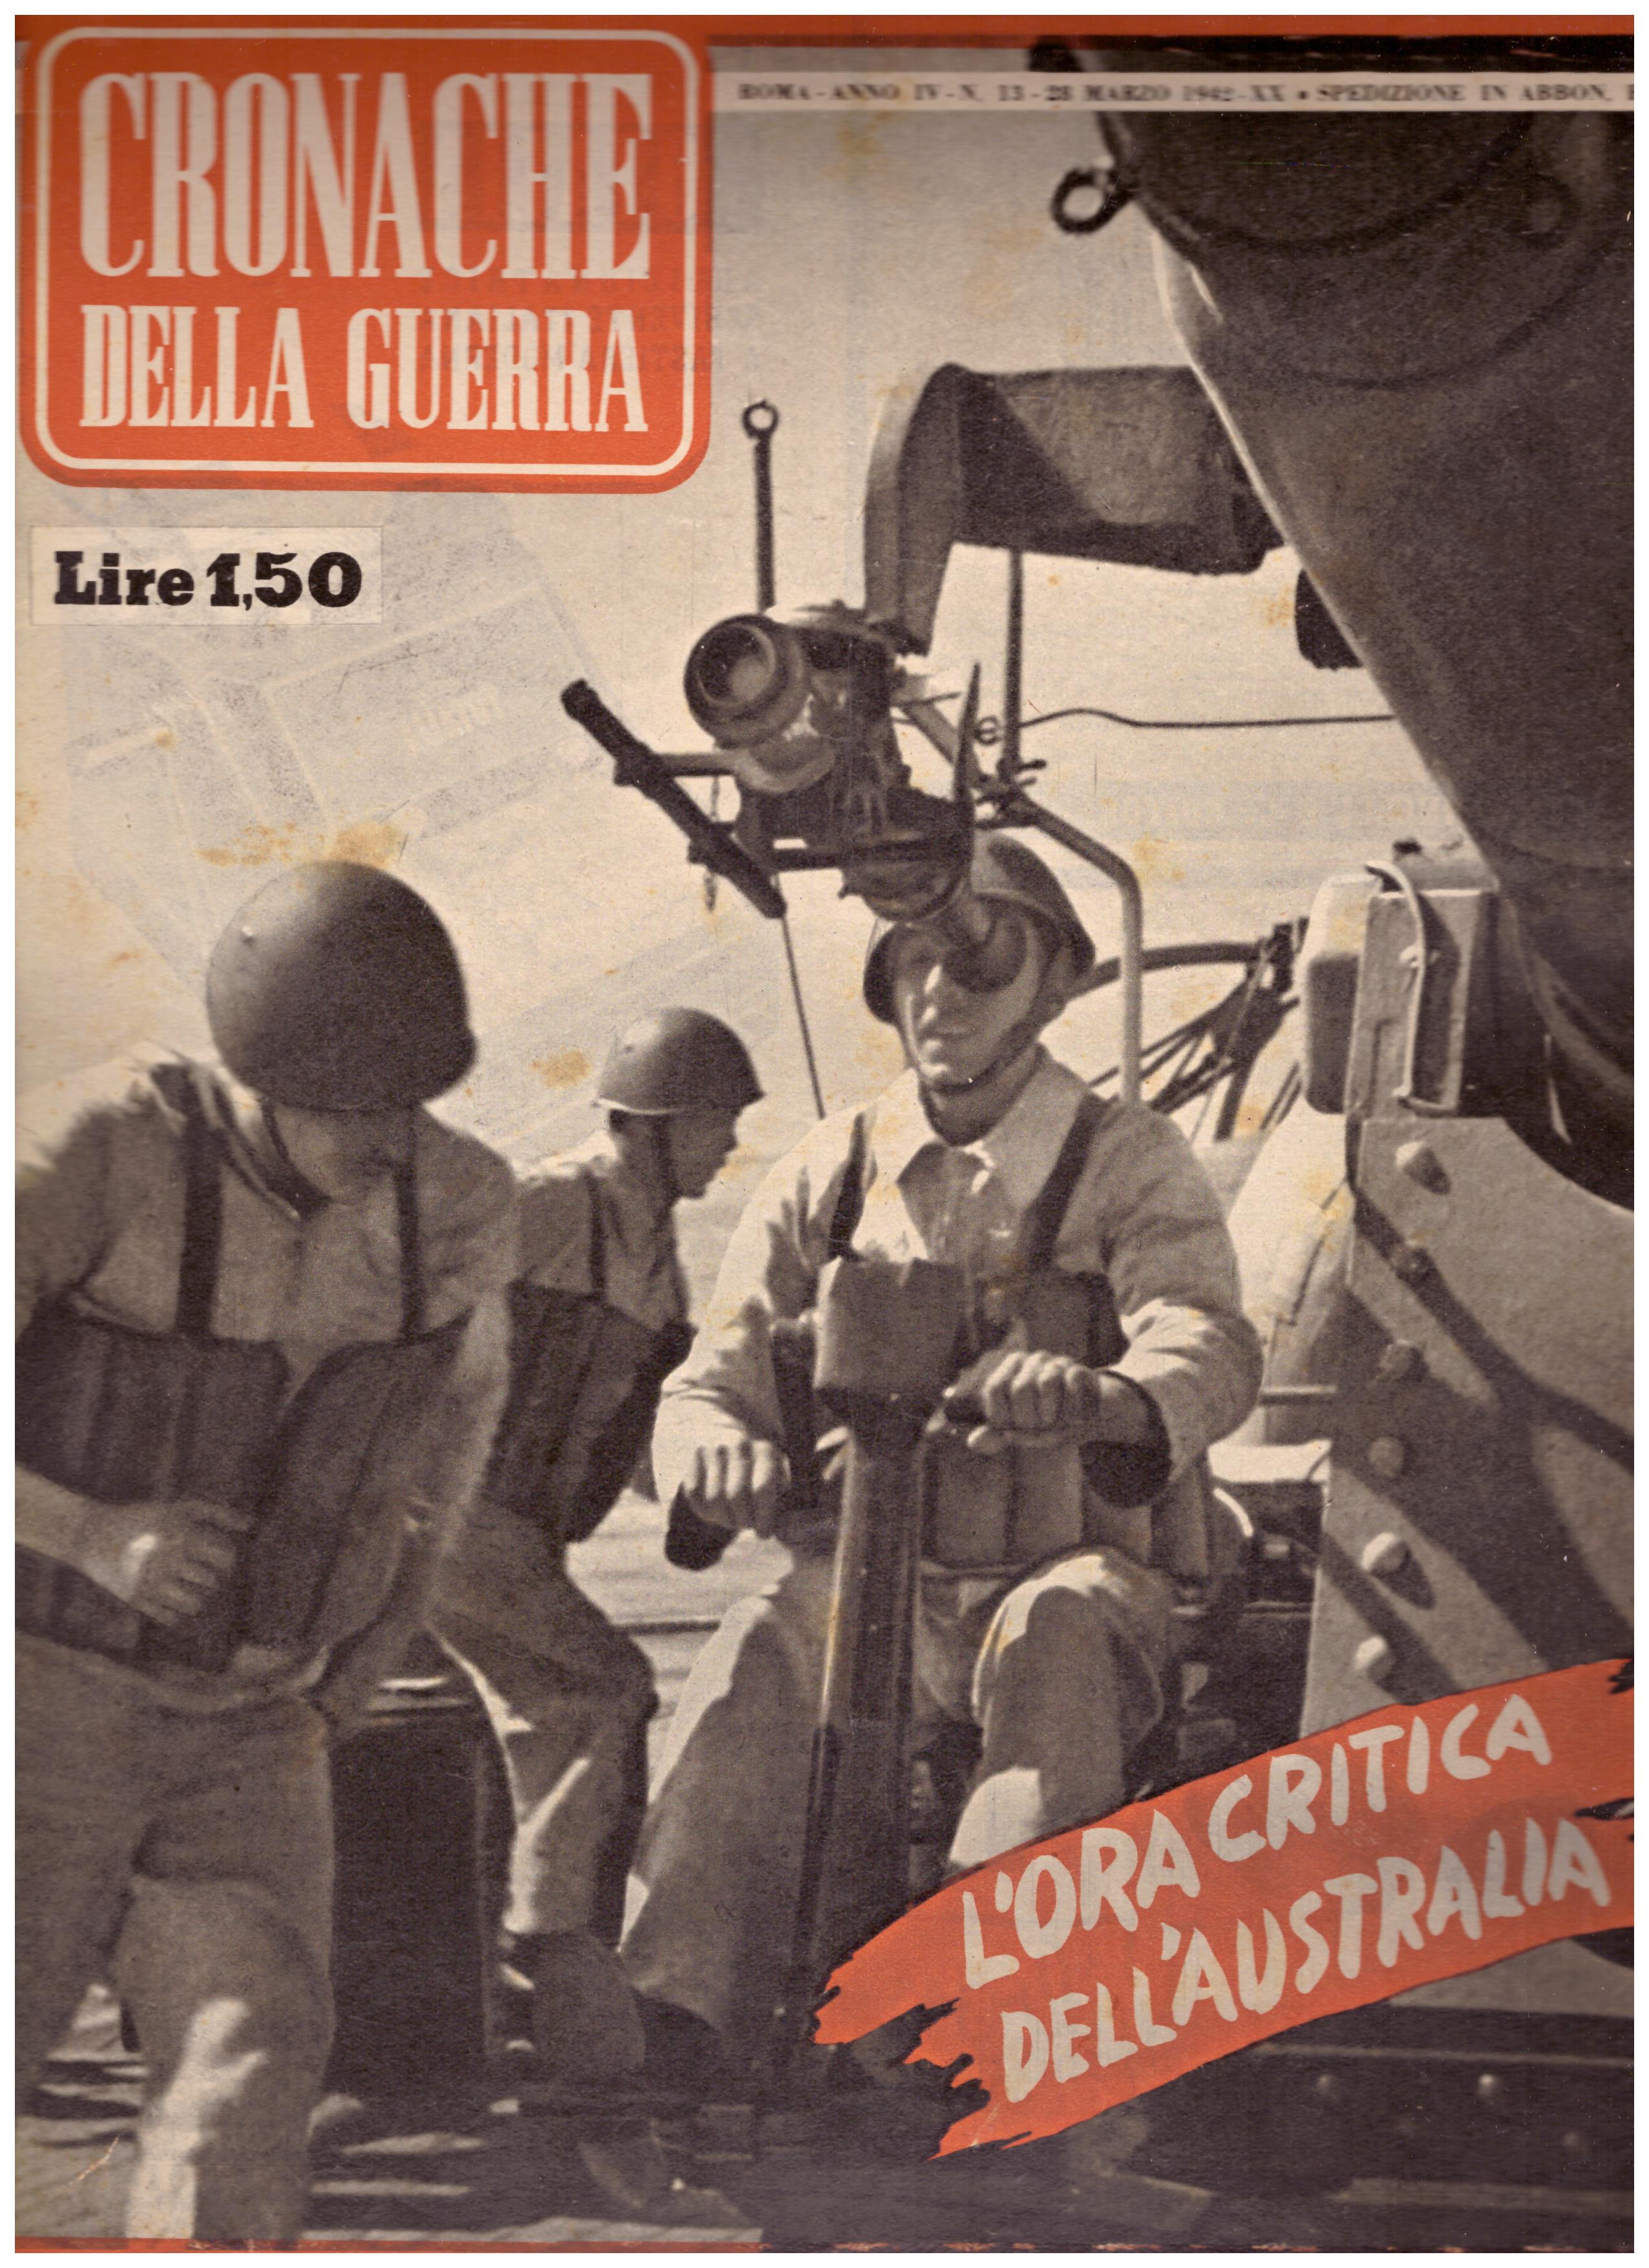 Titolo: Cronache della guerra, Roma Anno IV N.13 28 marzo 1942  Autore : AA.VV.   Editore: Tumminelli editore Roma